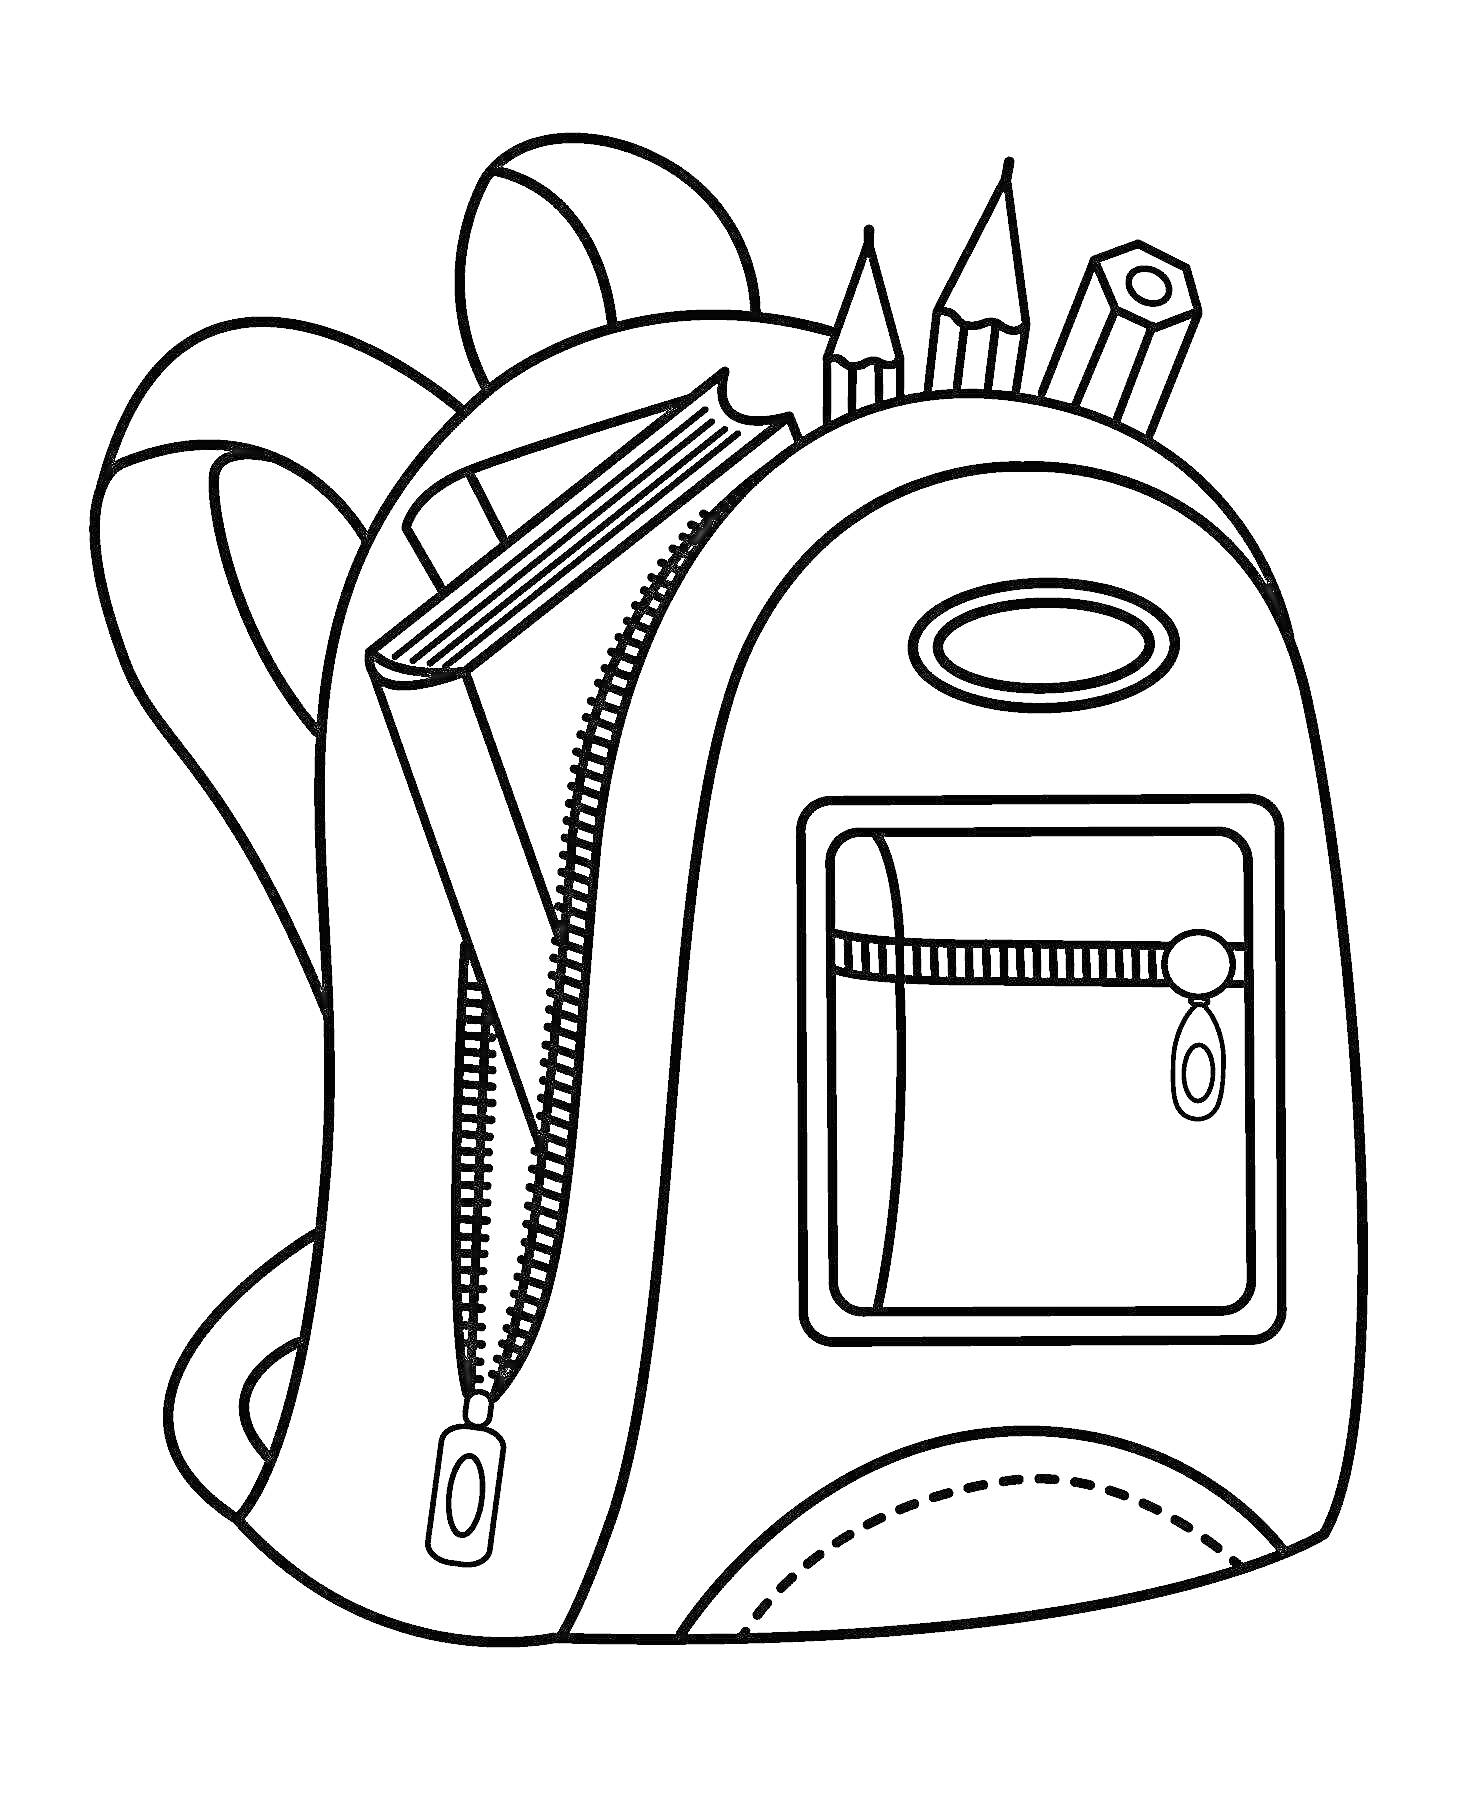 Раскраска Рюкзак с застежками и школьными принадлежностями (книга, карандаши, фломастер)